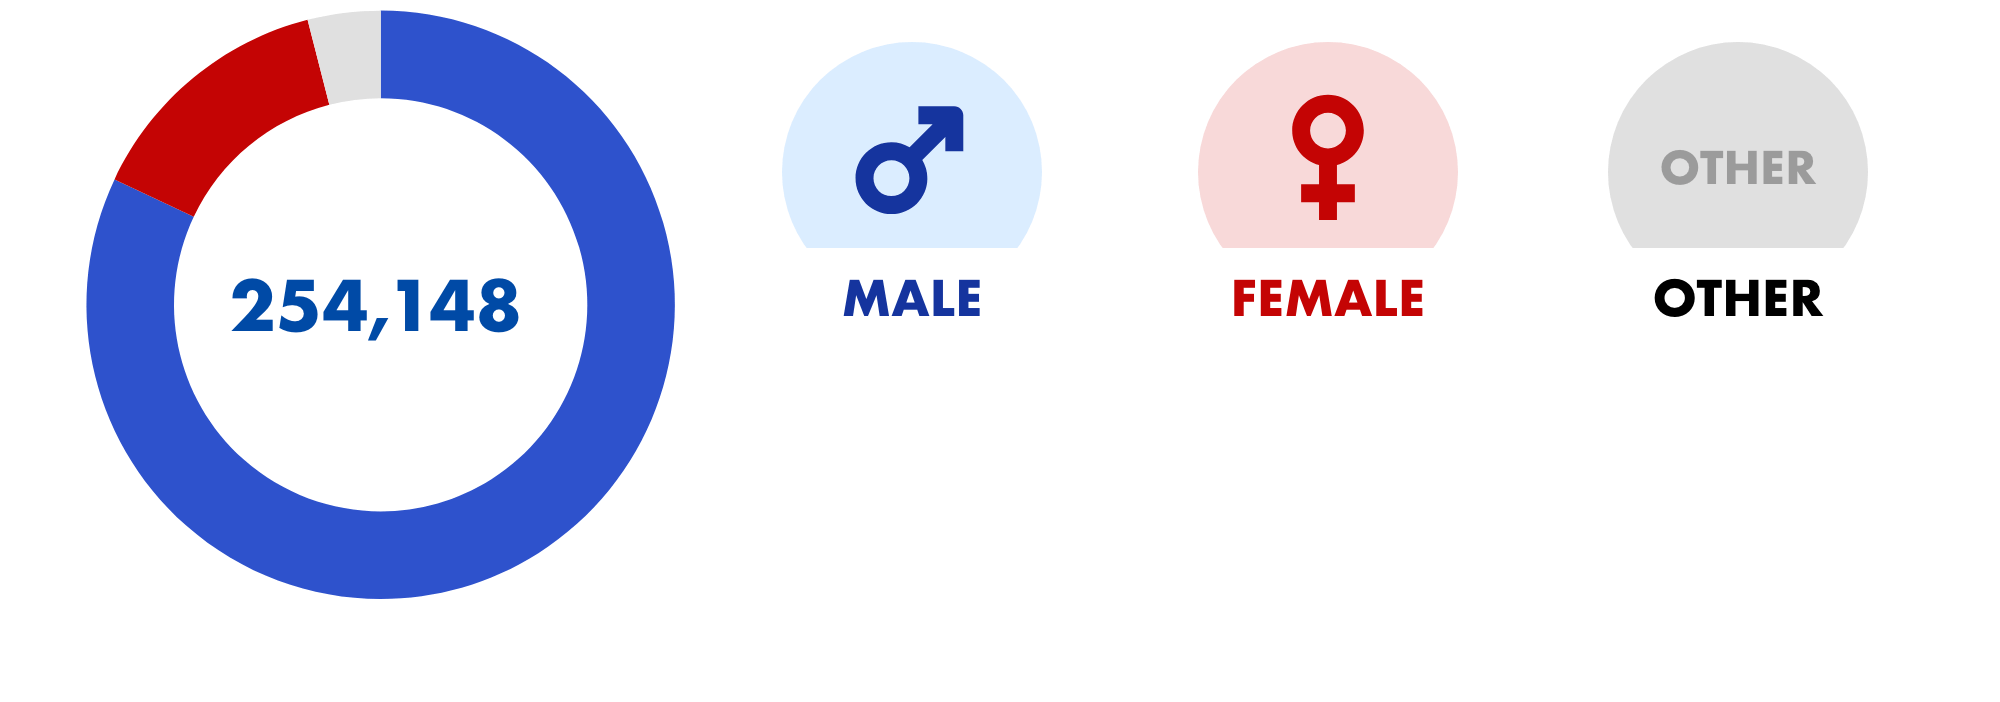 Maleが208,650票で82%、Femaleが34,794票で14%、その他が10,704票で4%でした